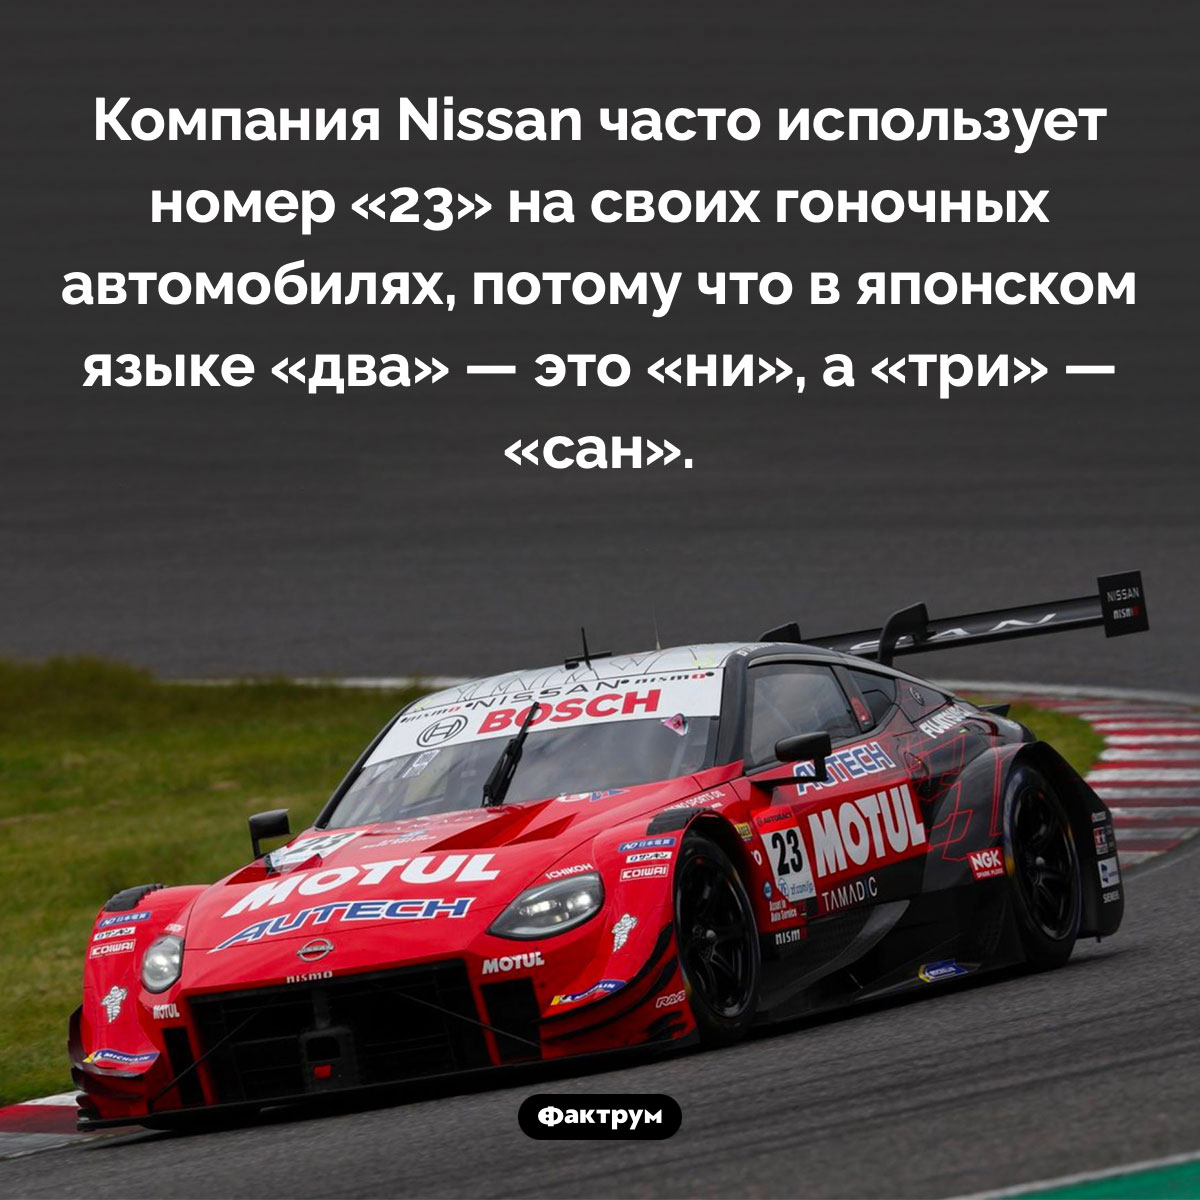 Что означает номер «23» на гоночном автомобиле Nissan. Компания Nissan часто использует номер «23» на своих гоночных автомобилях, потому что в японском языке «два» — это «ни», а «три» — «сан».